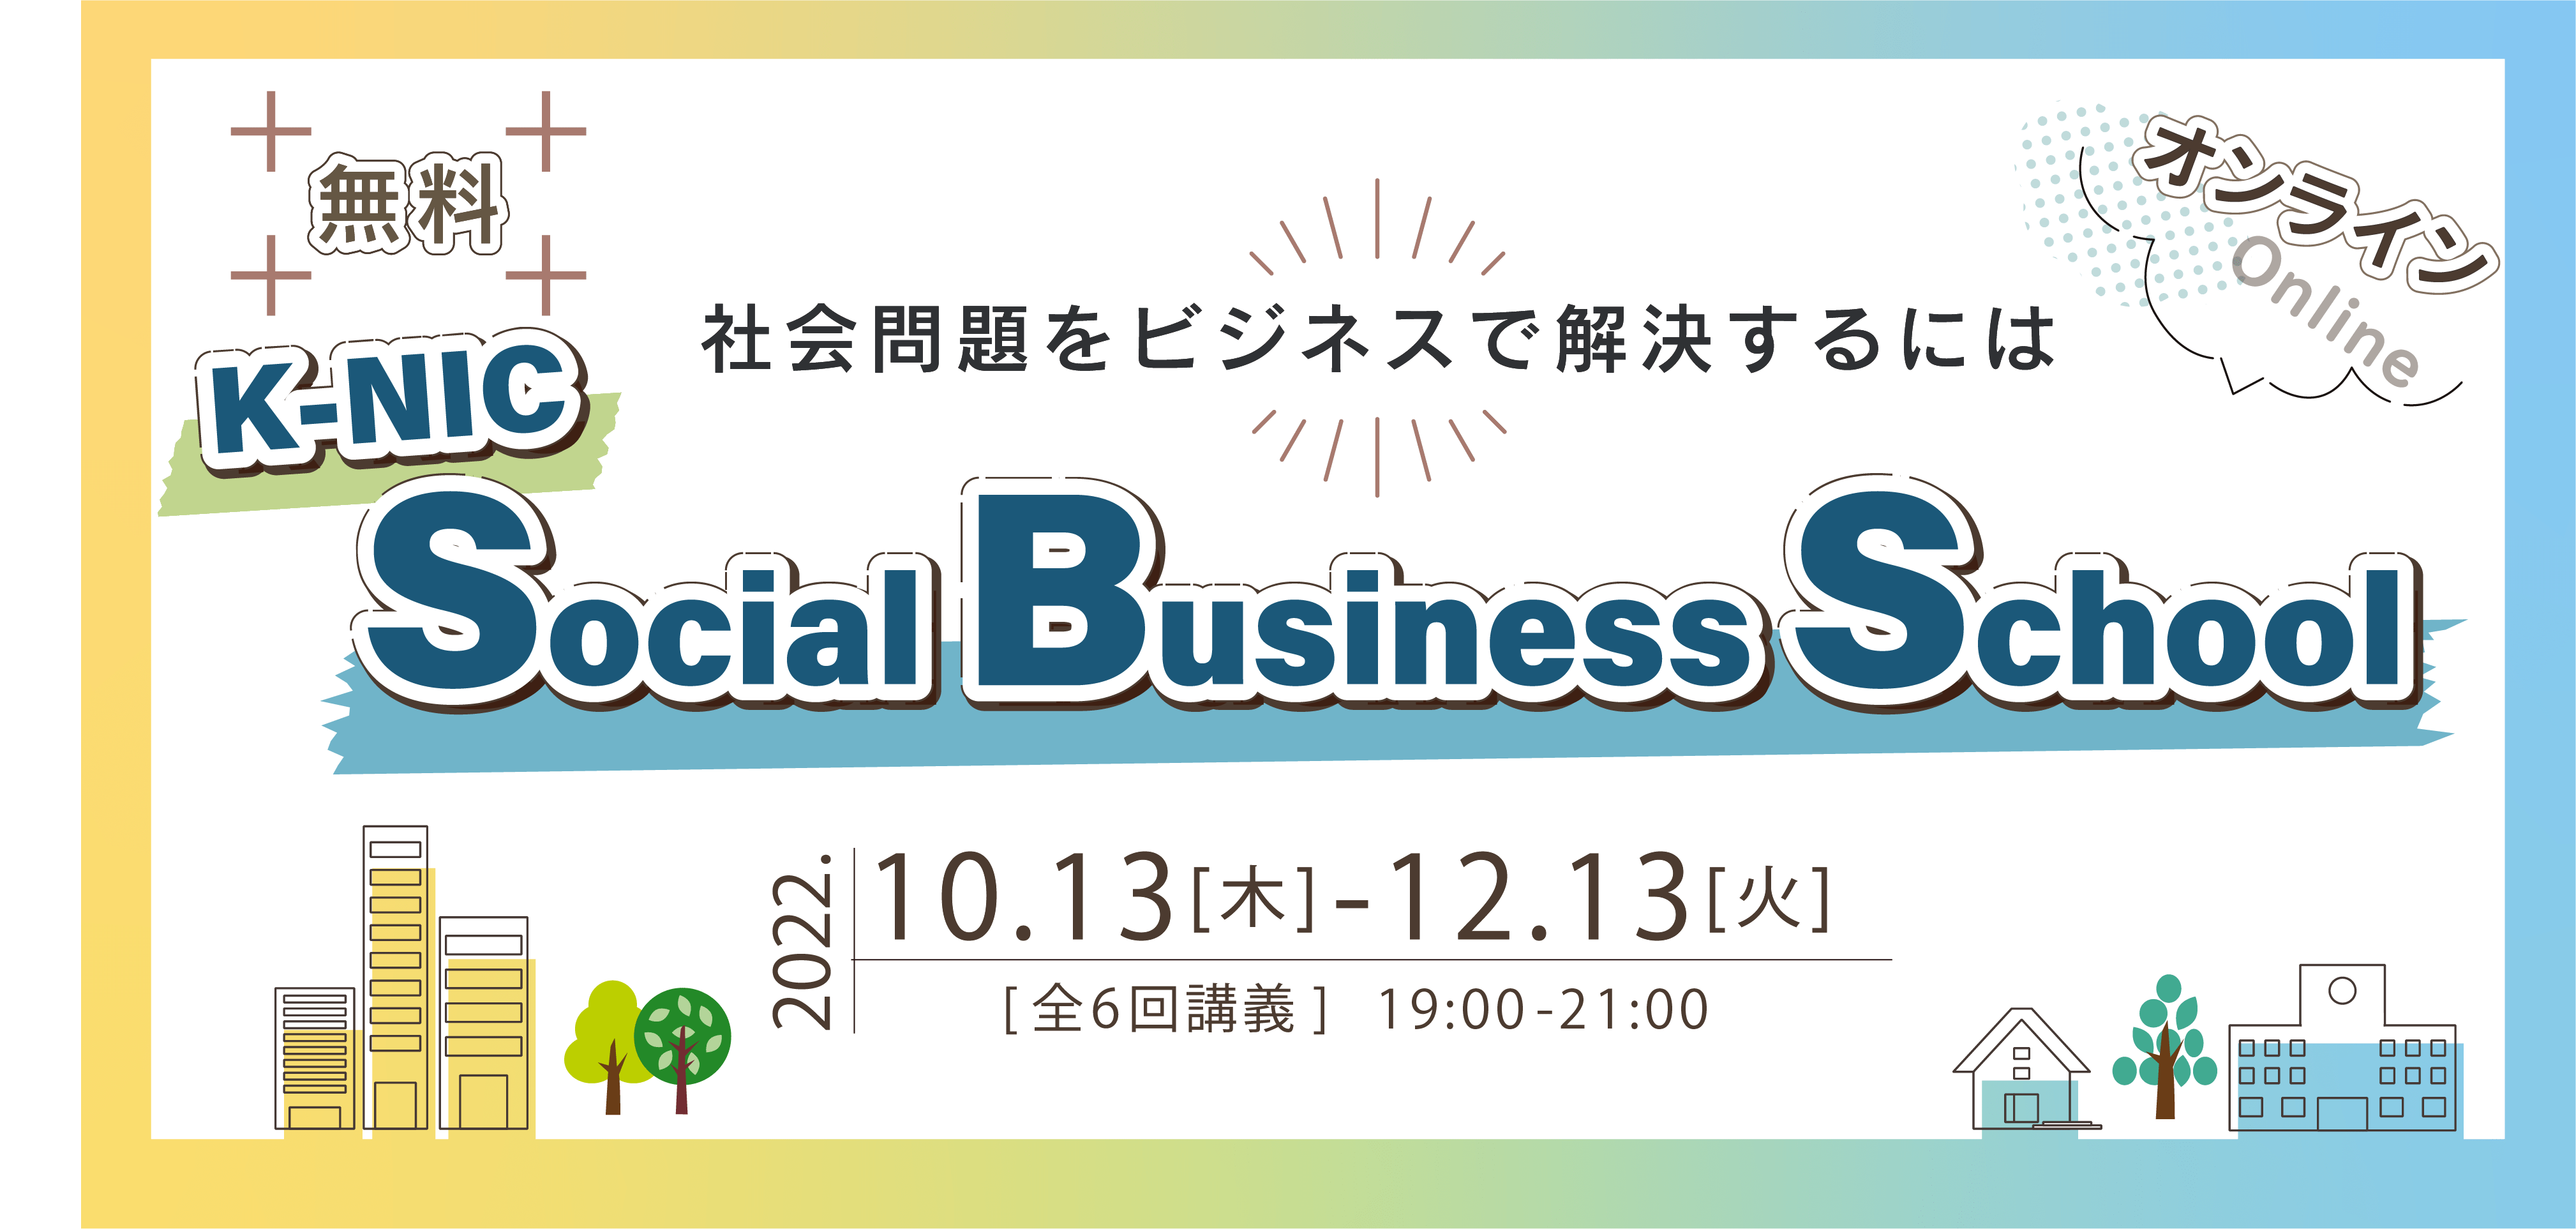 【10/13-12/13開催】 K-NIC Social Business School ～社会問題をビジネスで解決するには～